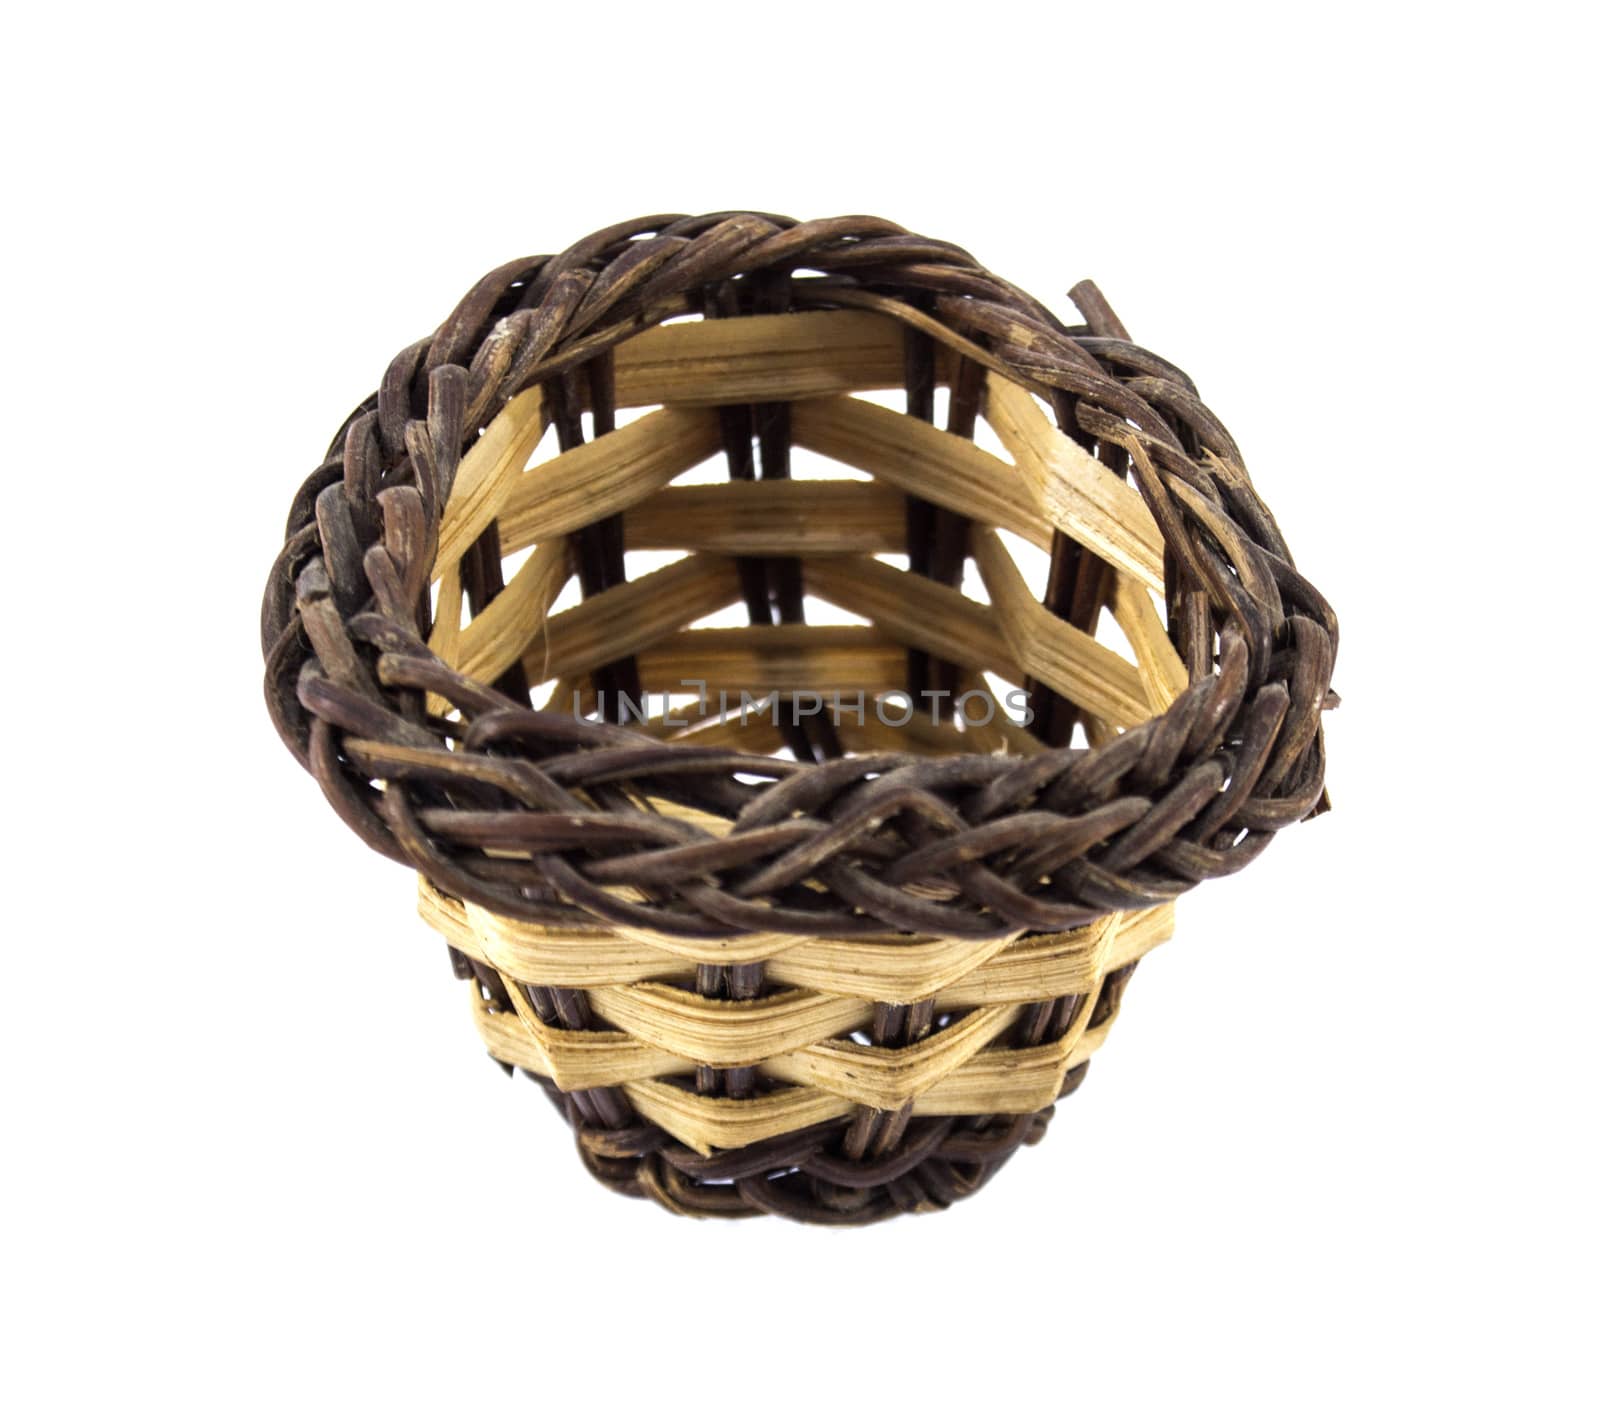 empty wicker basket by designsstock